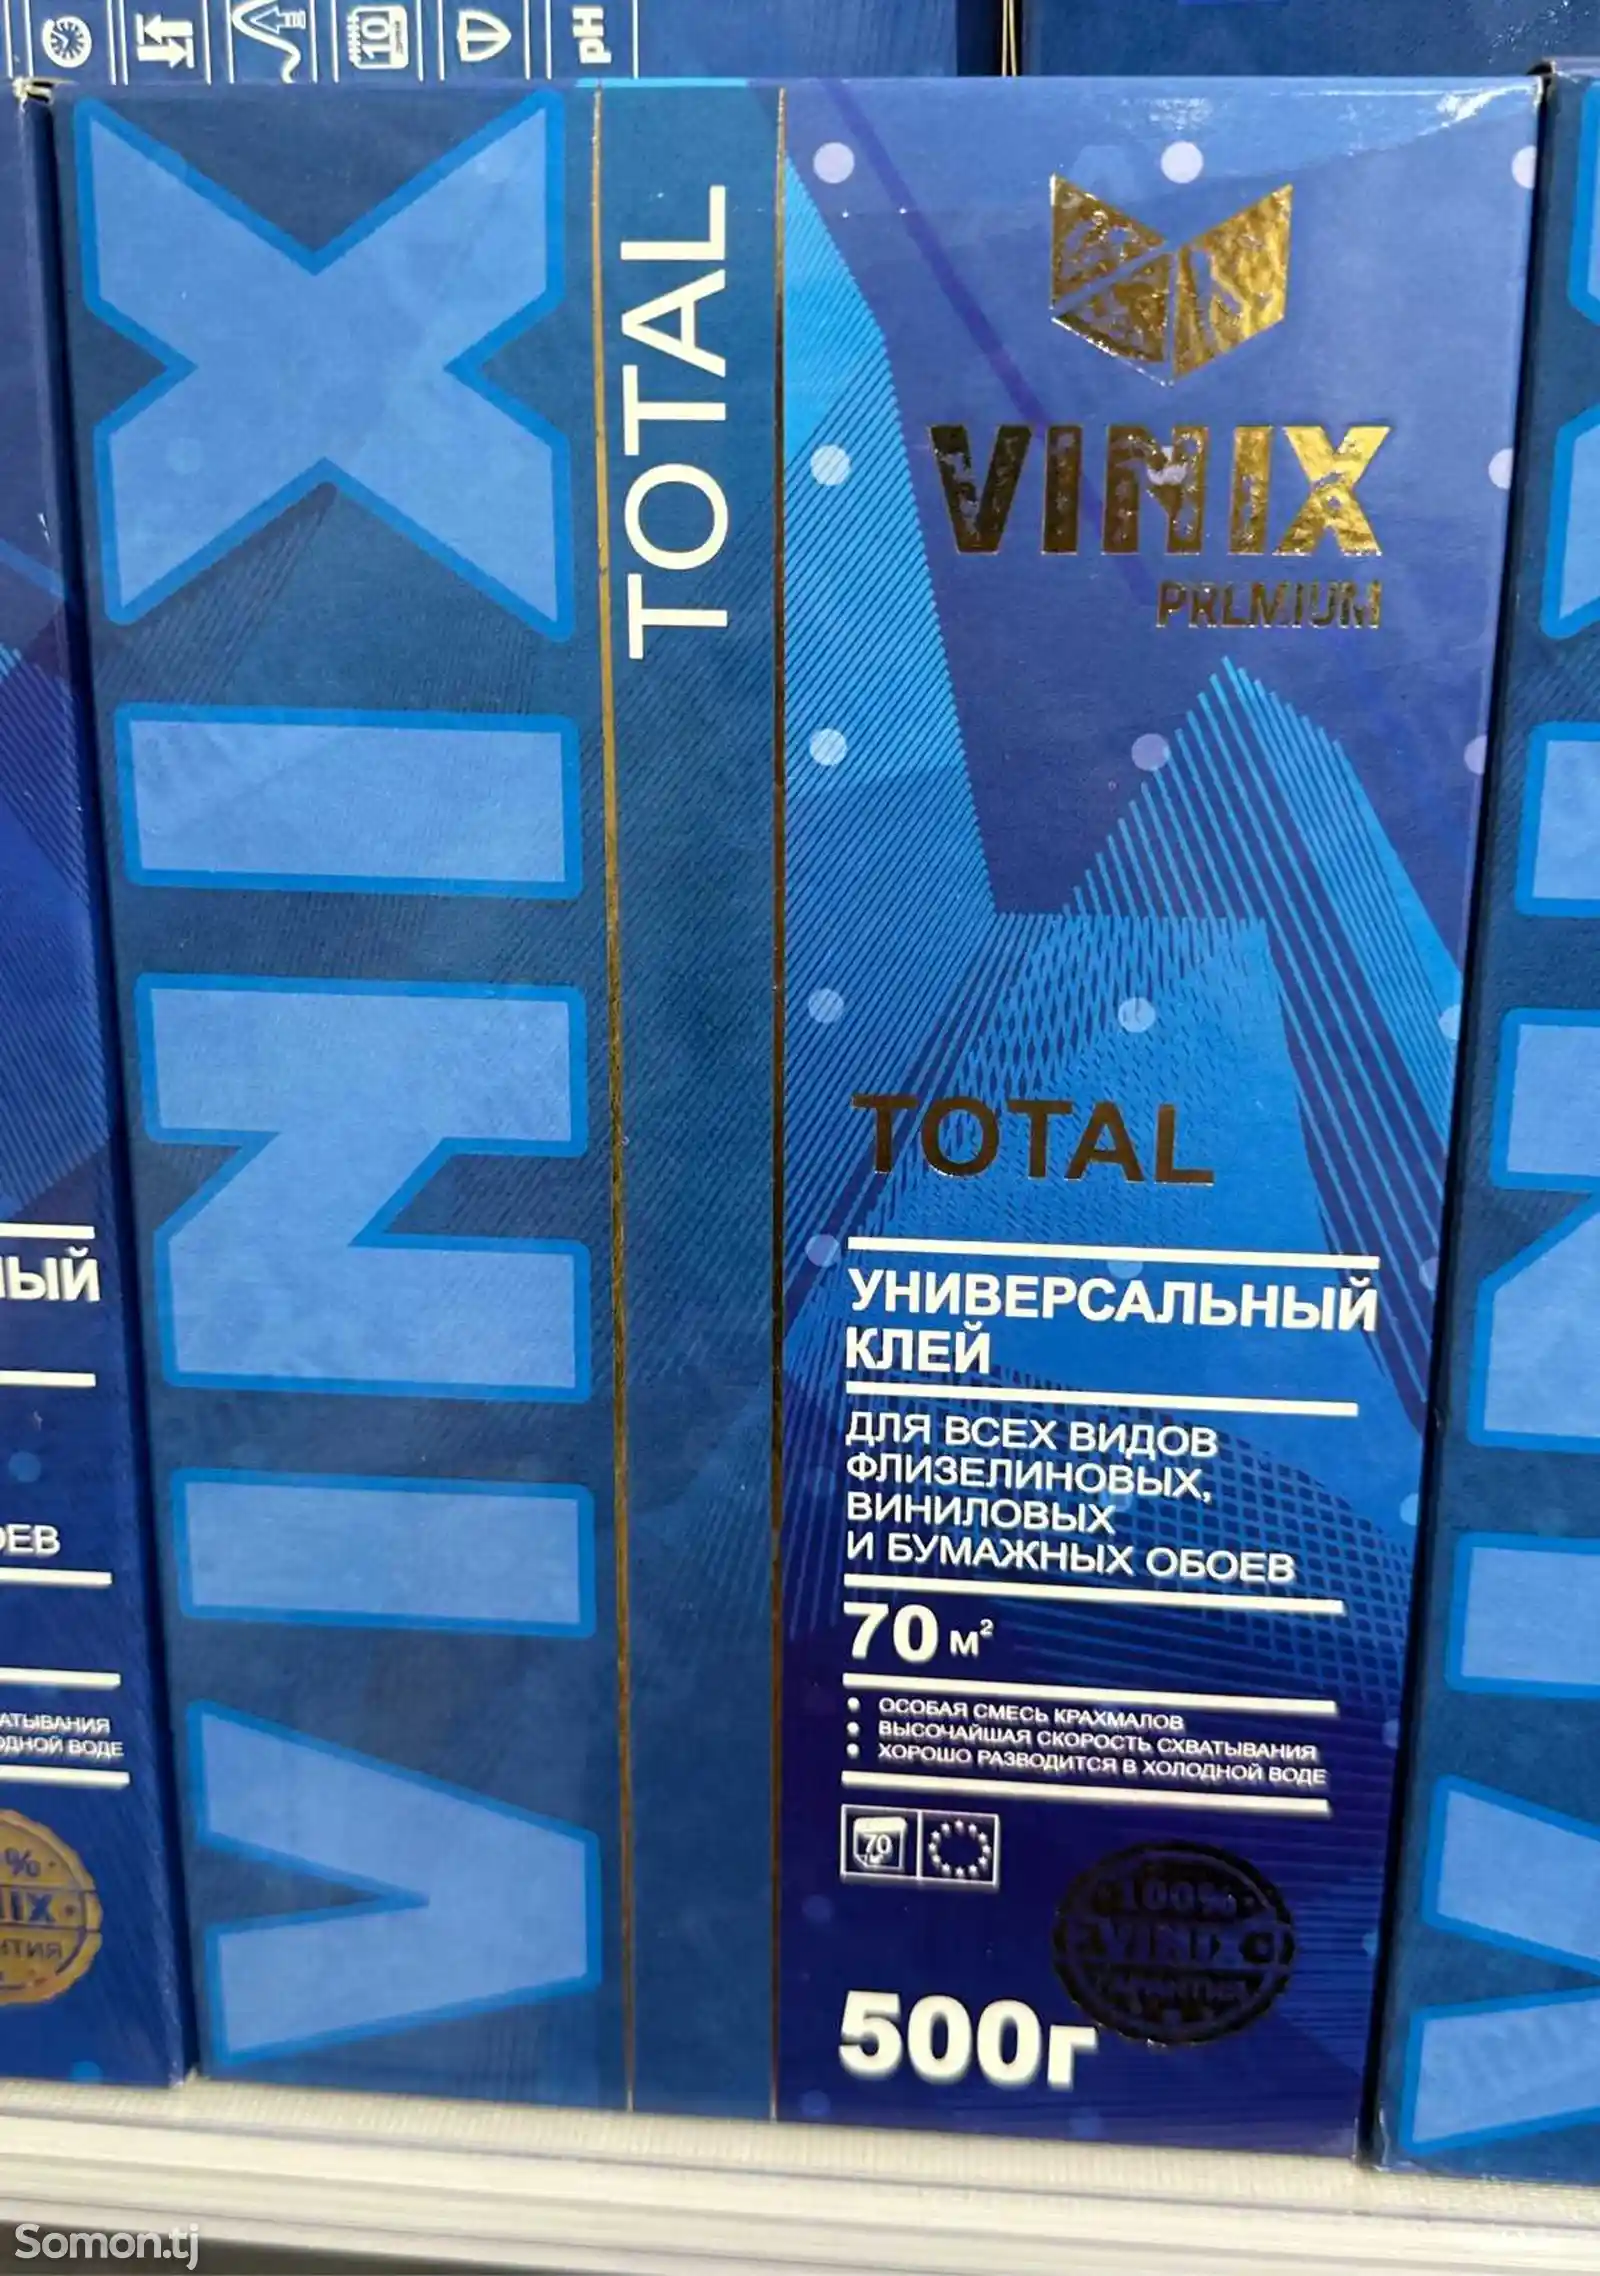 Обойный клей Vinix Premium total 500гр